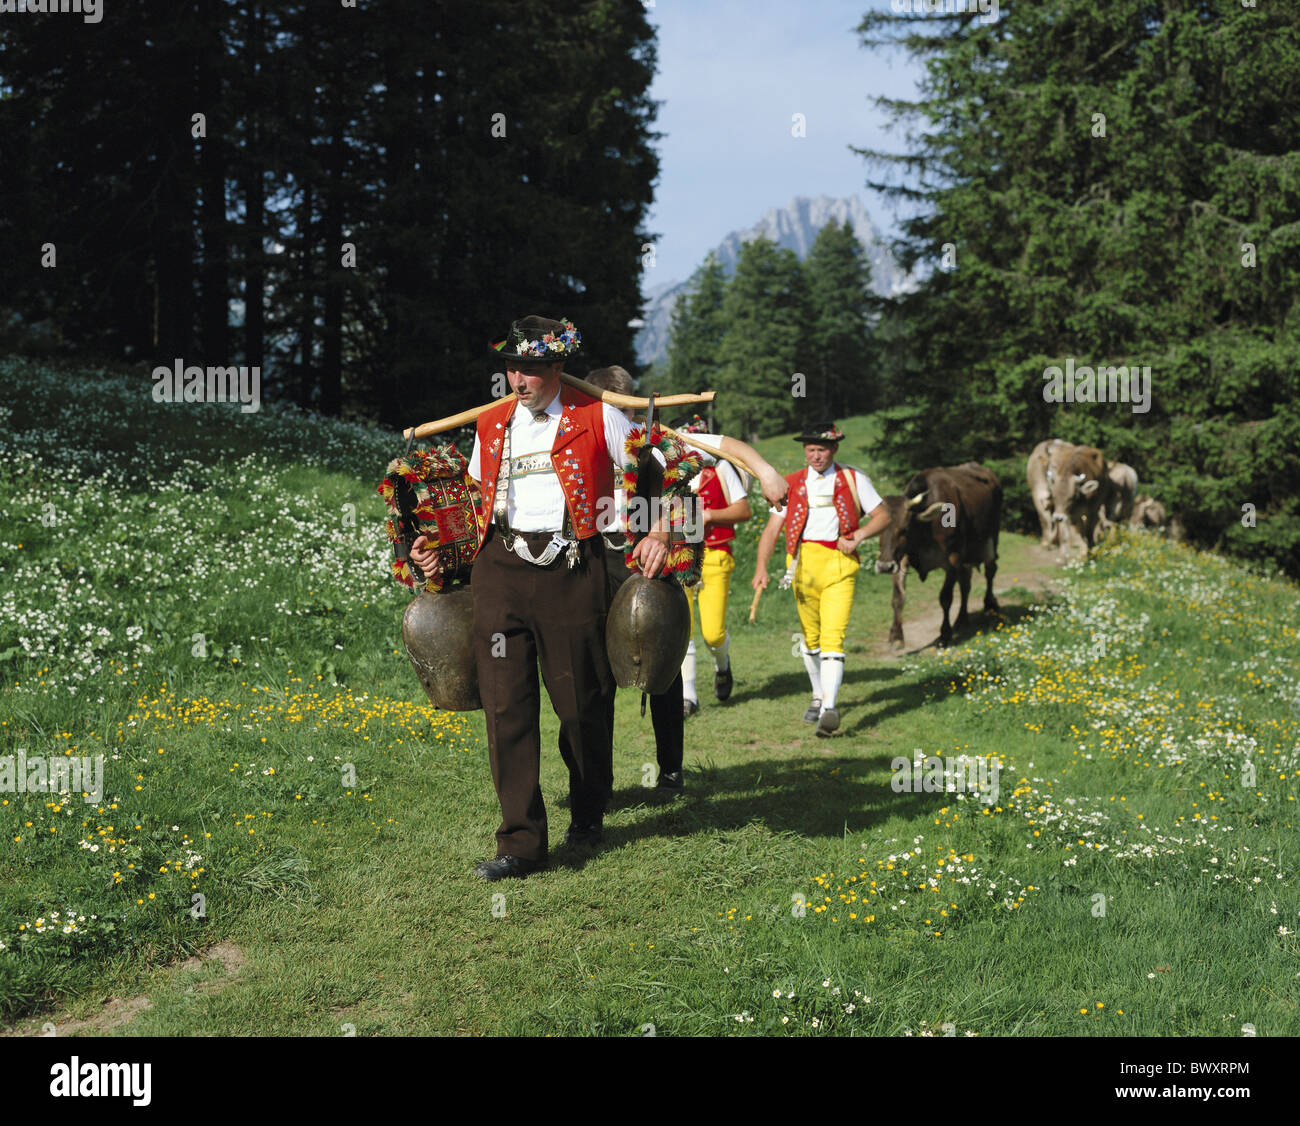 La tradition du folklore alpages alp ascenseur Appenzell lieu agriculteurs promotion vaches cloches aucun modèle rele Banque D'Images